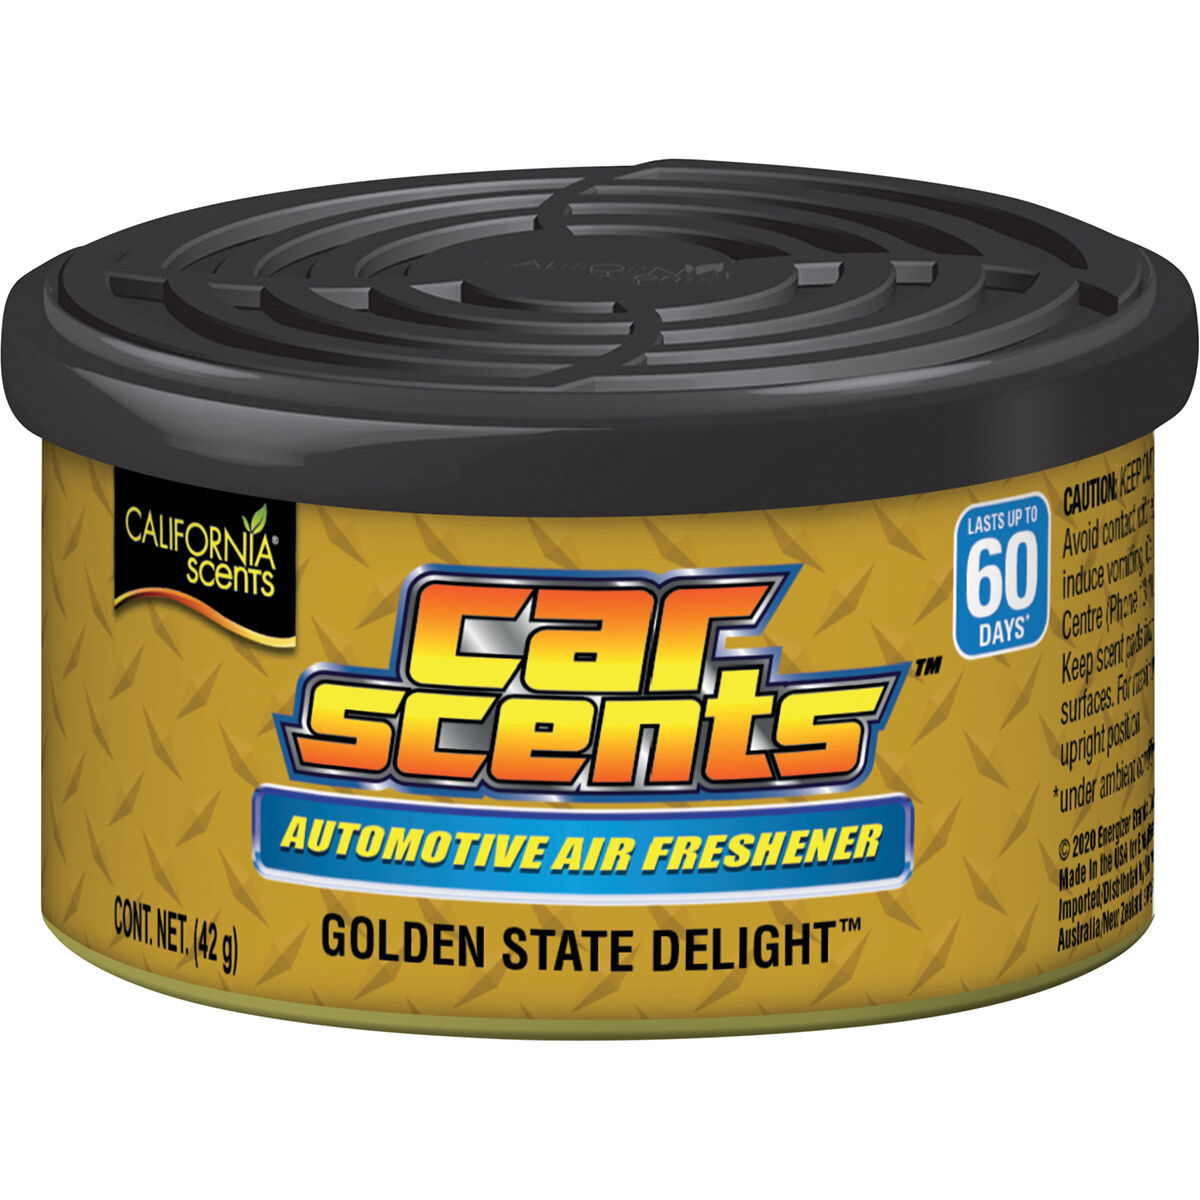 california-scents